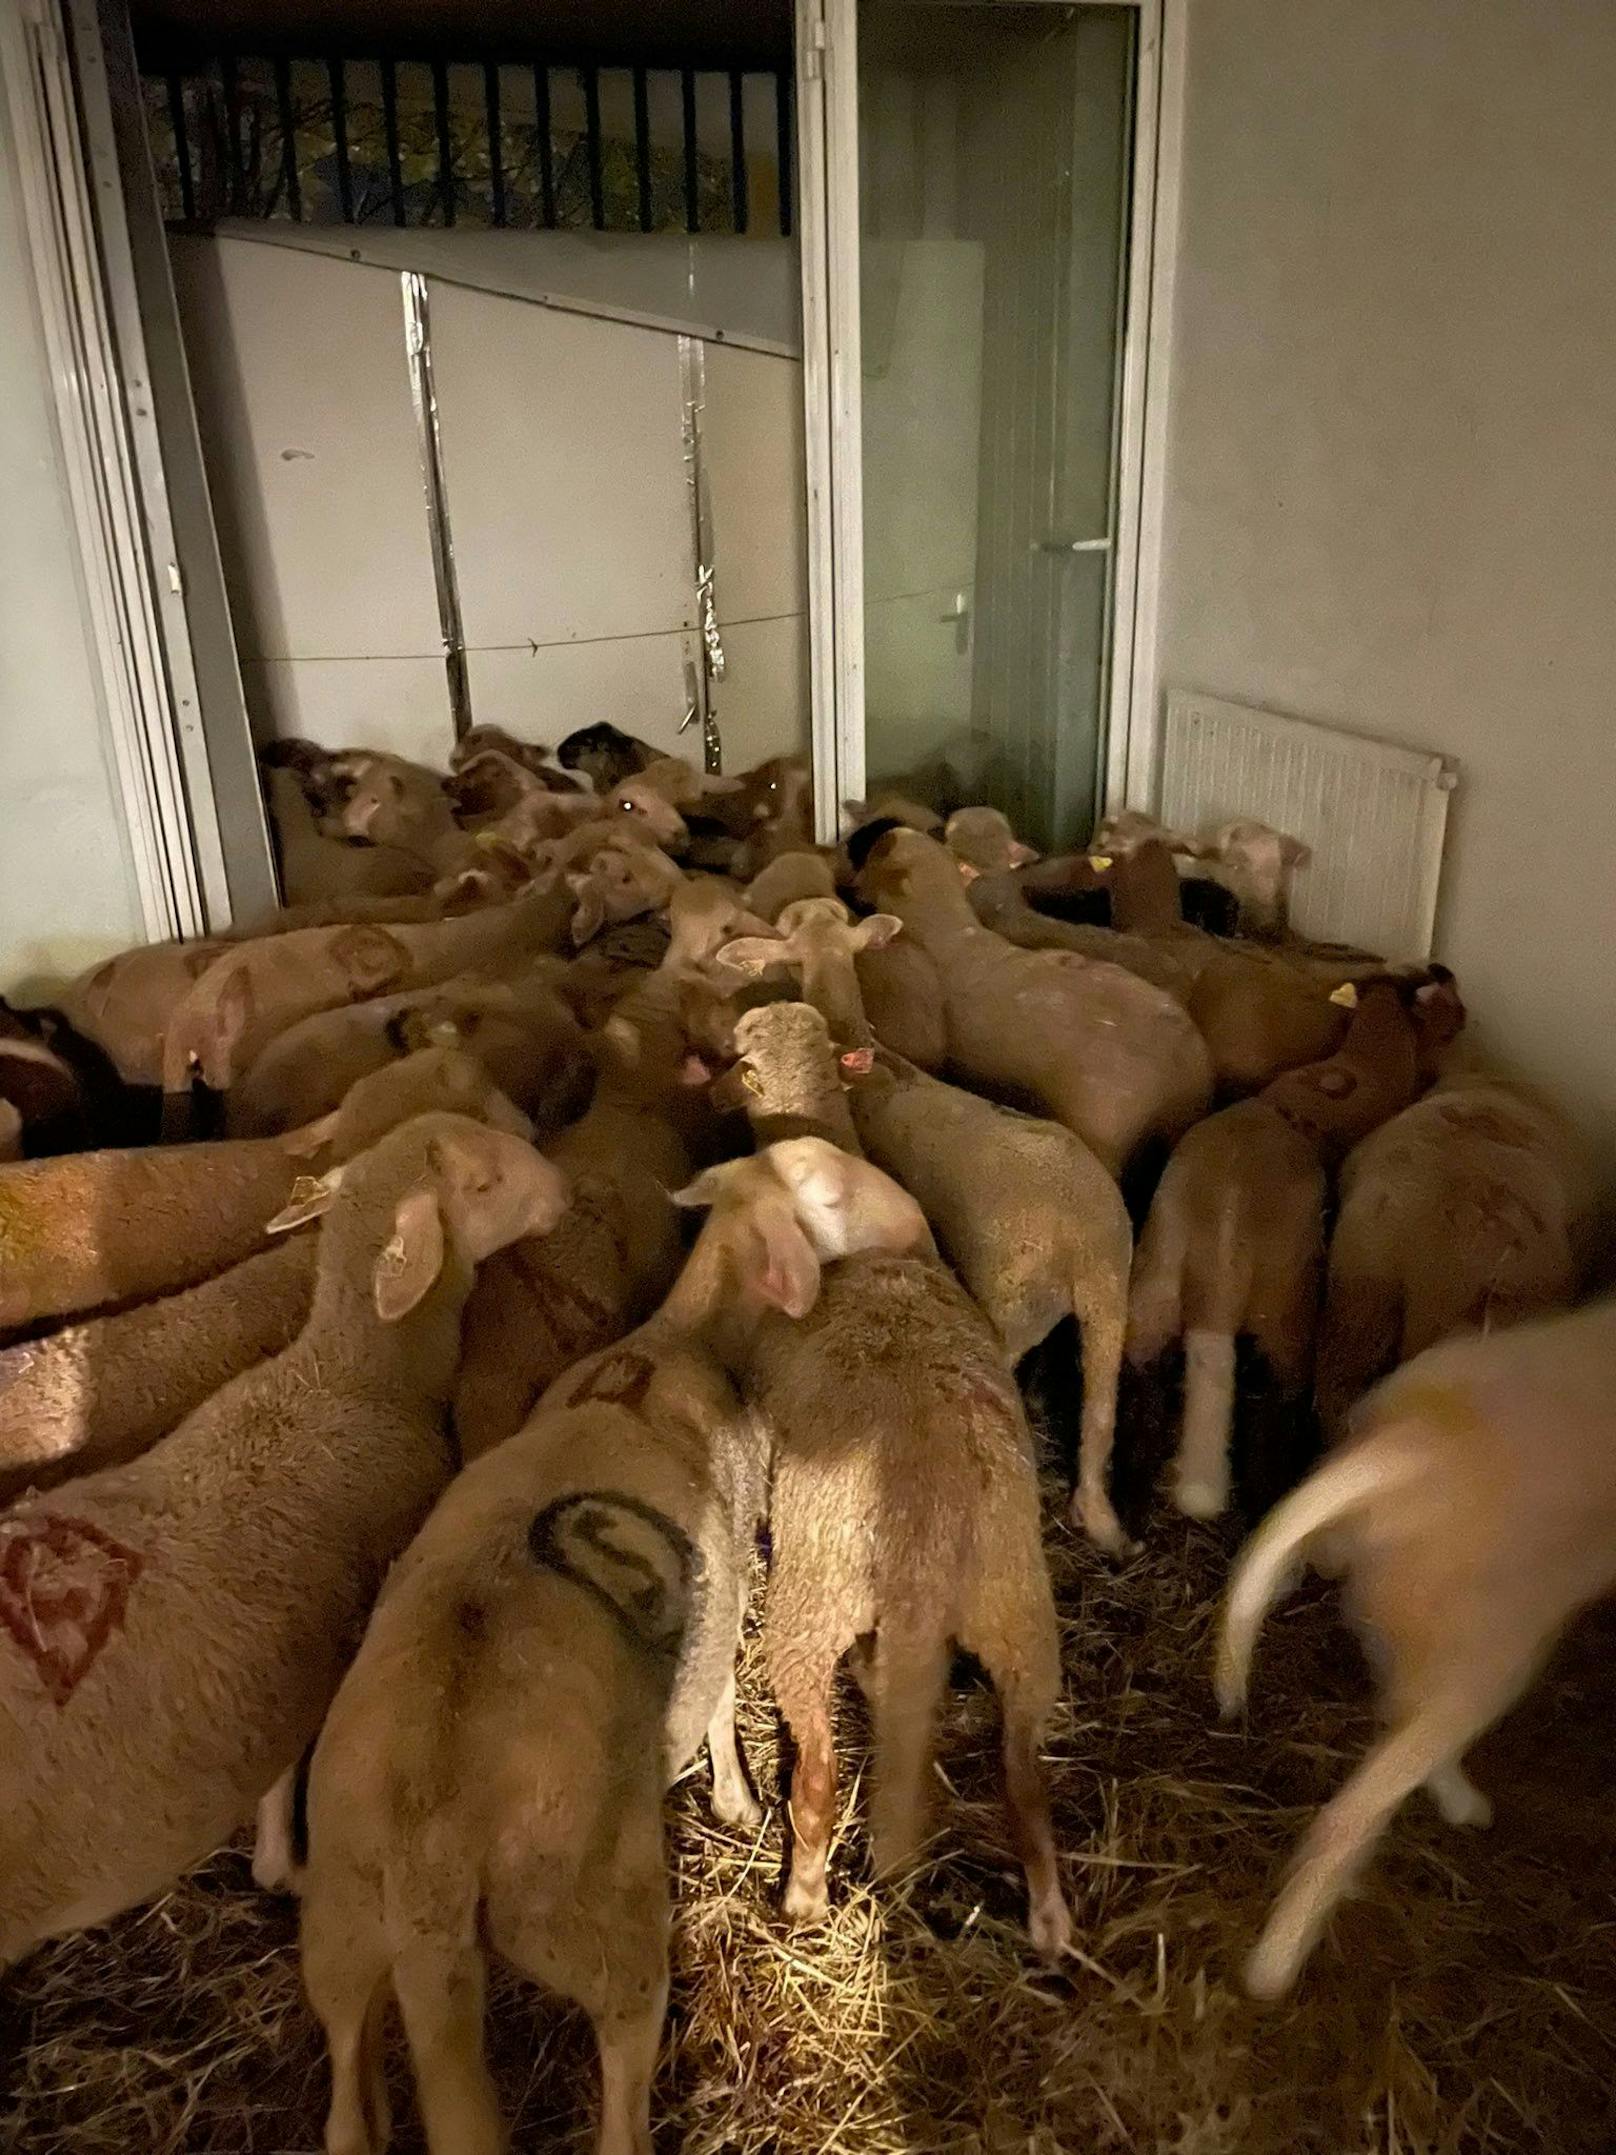 Männer in Blut-Shirts und 40 Schafe in Wohnung entdeckt